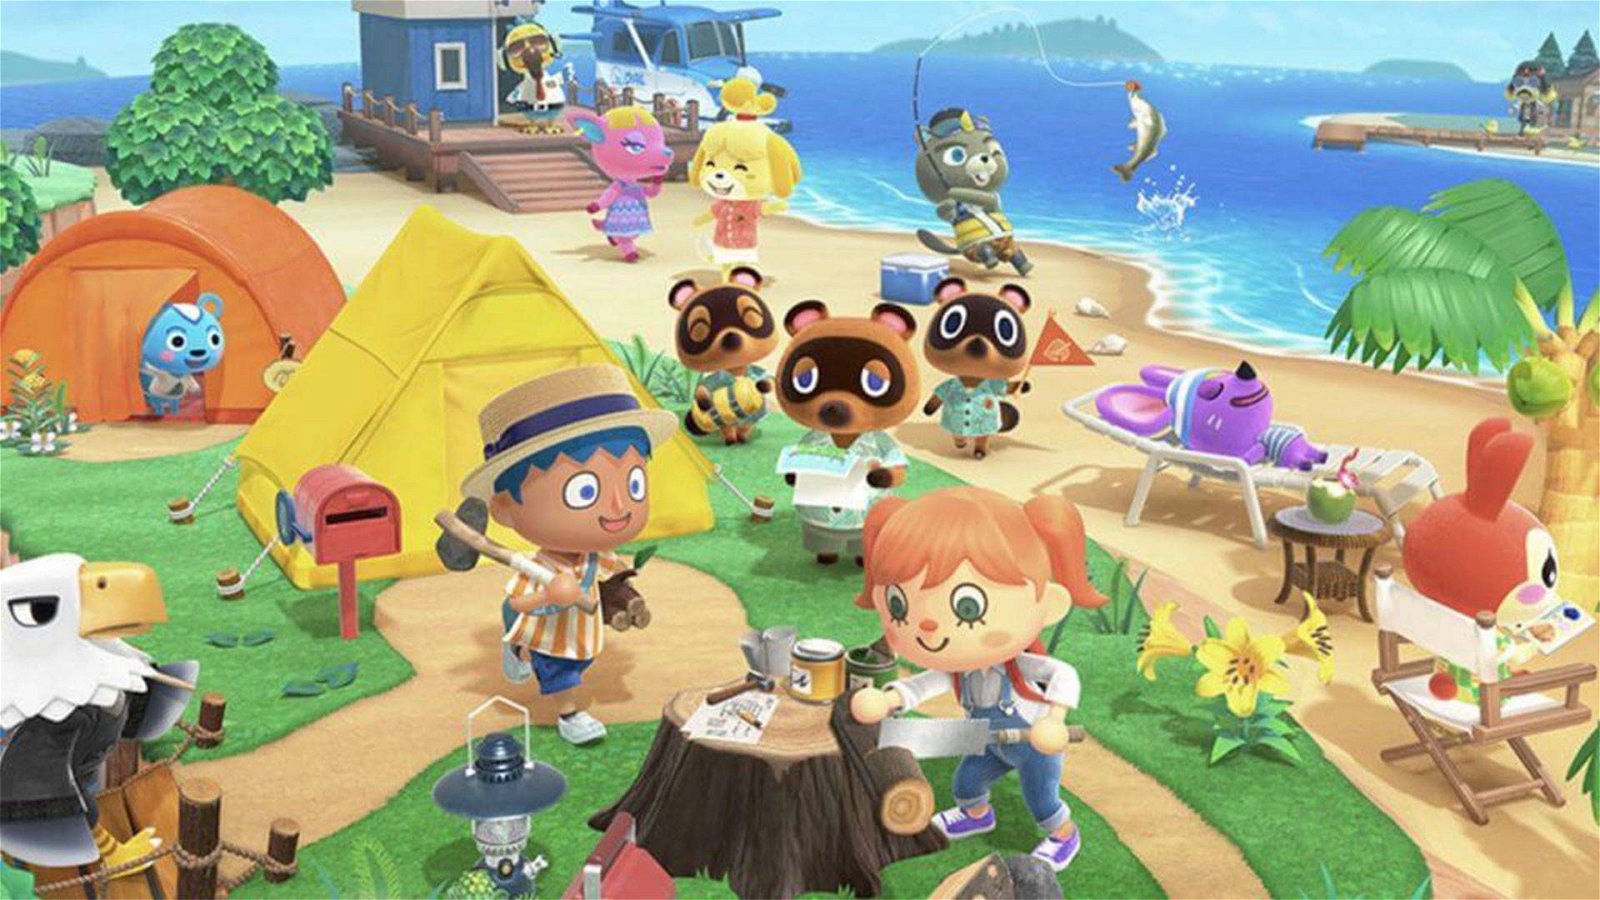 Immagine di Animal Crossing New Horizons | Come aumentare la valutazione dell'isola (ottenere 5 stelle)